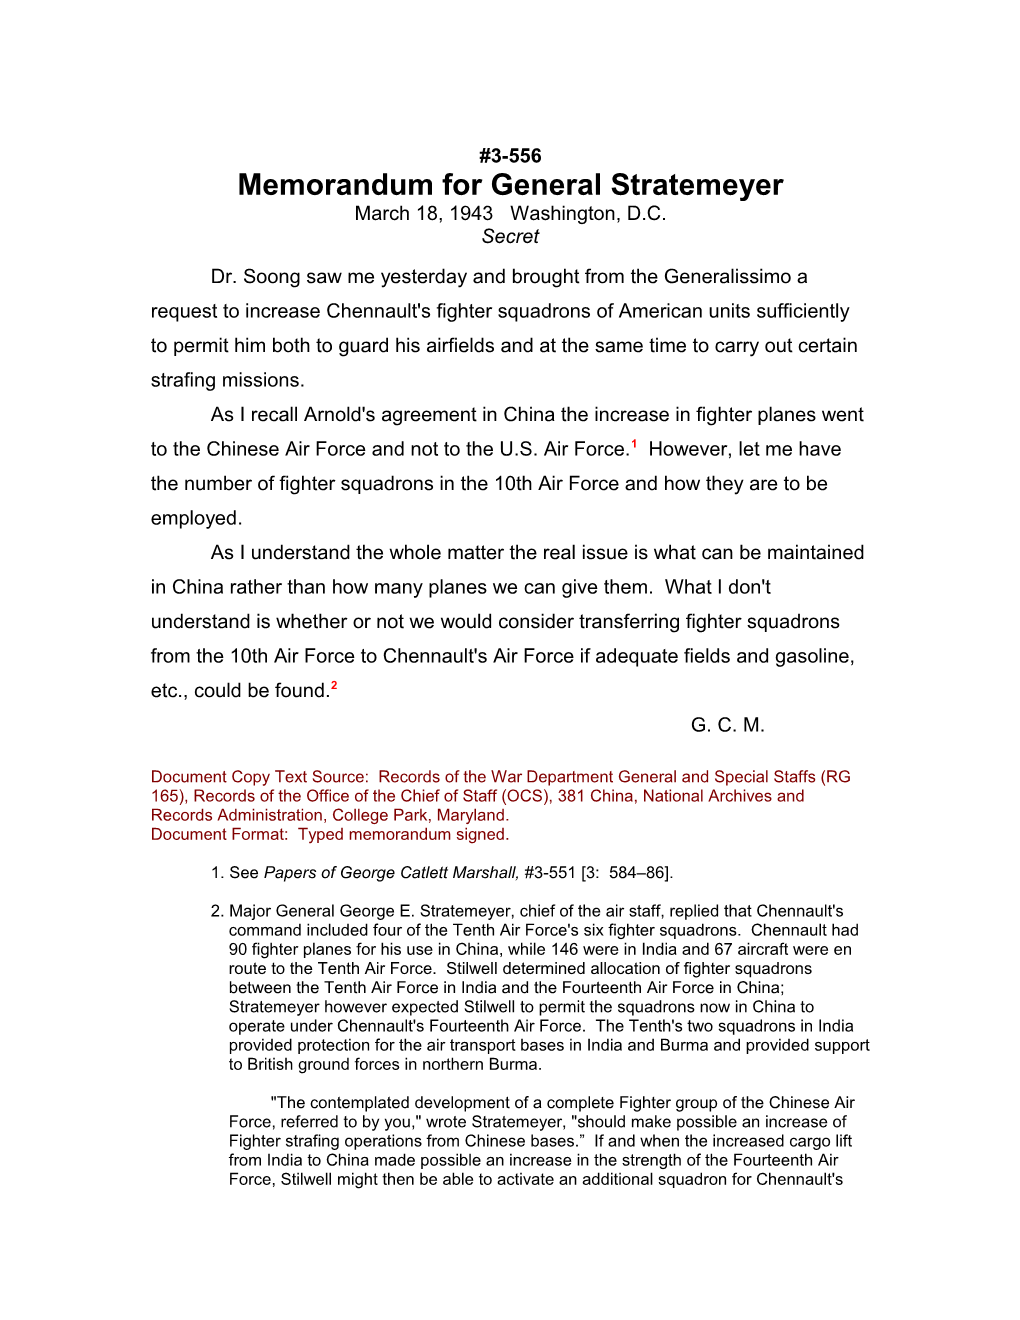 Memorandum for General Stratemeyer